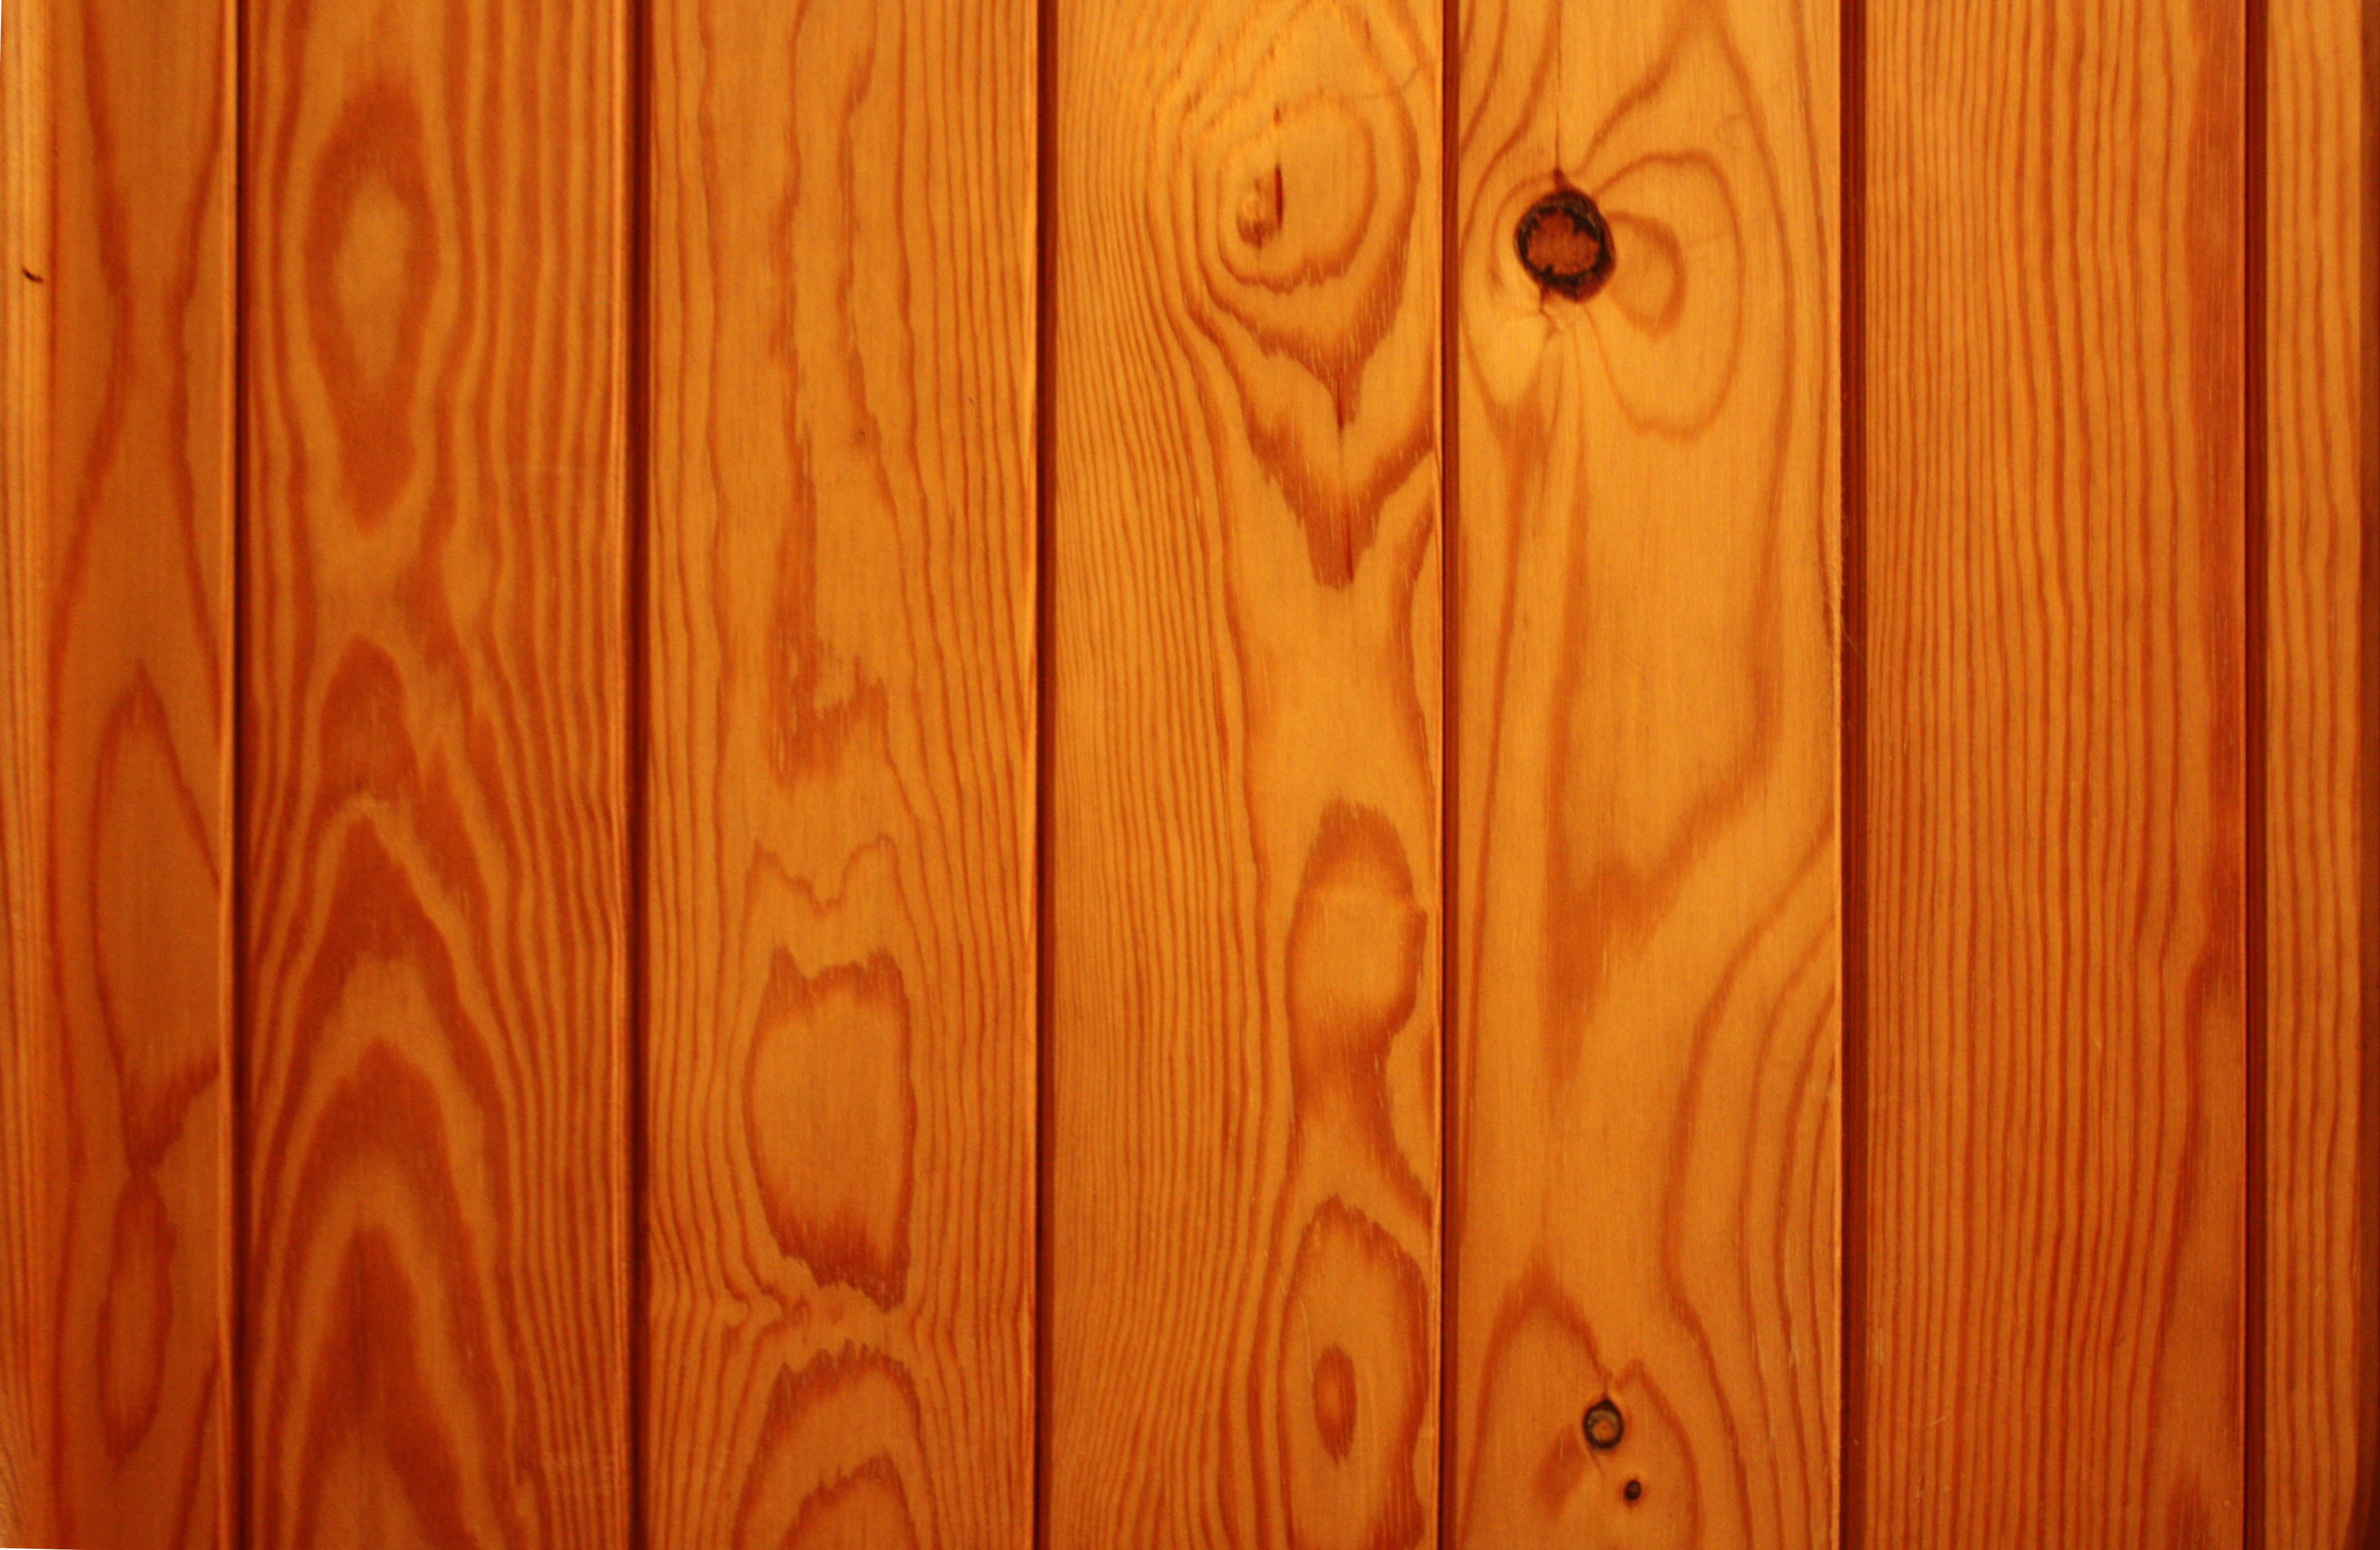 Nền ván gỗ thô: Ván gỗ thô là một chất liệu hoàn hảo cho việc tạo ra nền nhà và trang trí nội thất. Với màu nâu tự nhiên và vân gỗ độc đáo, nền ván gỗ thô tạo nên một không gian sống ấm cúng và độc đáo. Hãy xem hình ảnh để khám phá sự độc đáo của nền ván gỗ thô.